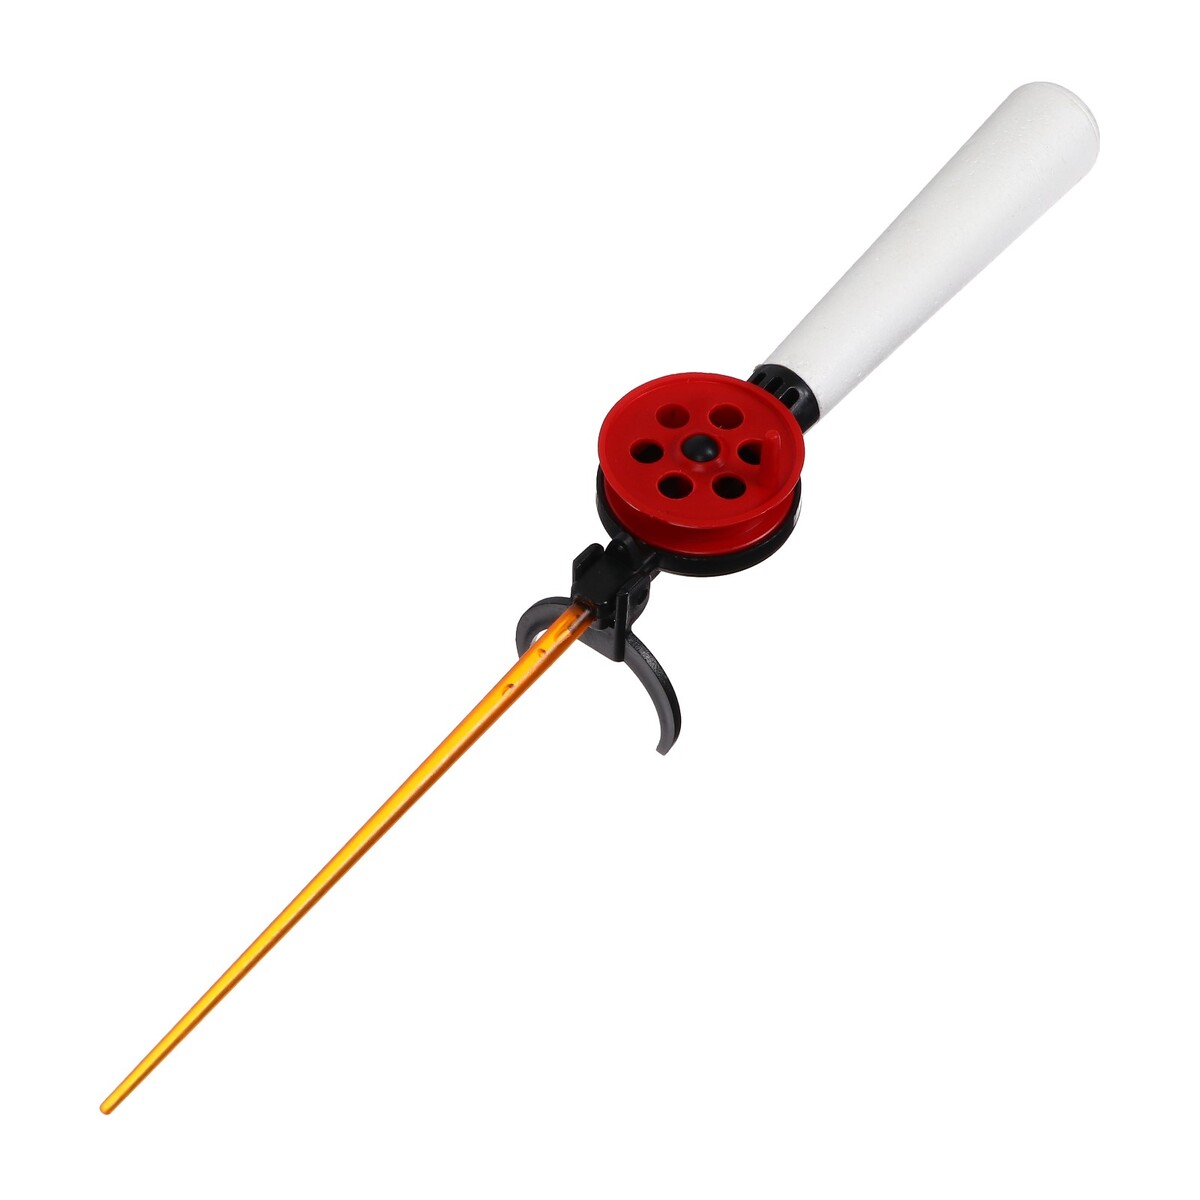 Удочка зимняя, ручка пенопласт длиной 130 мм, hfb-9b удочка зимняя балалайка красный hfb 43